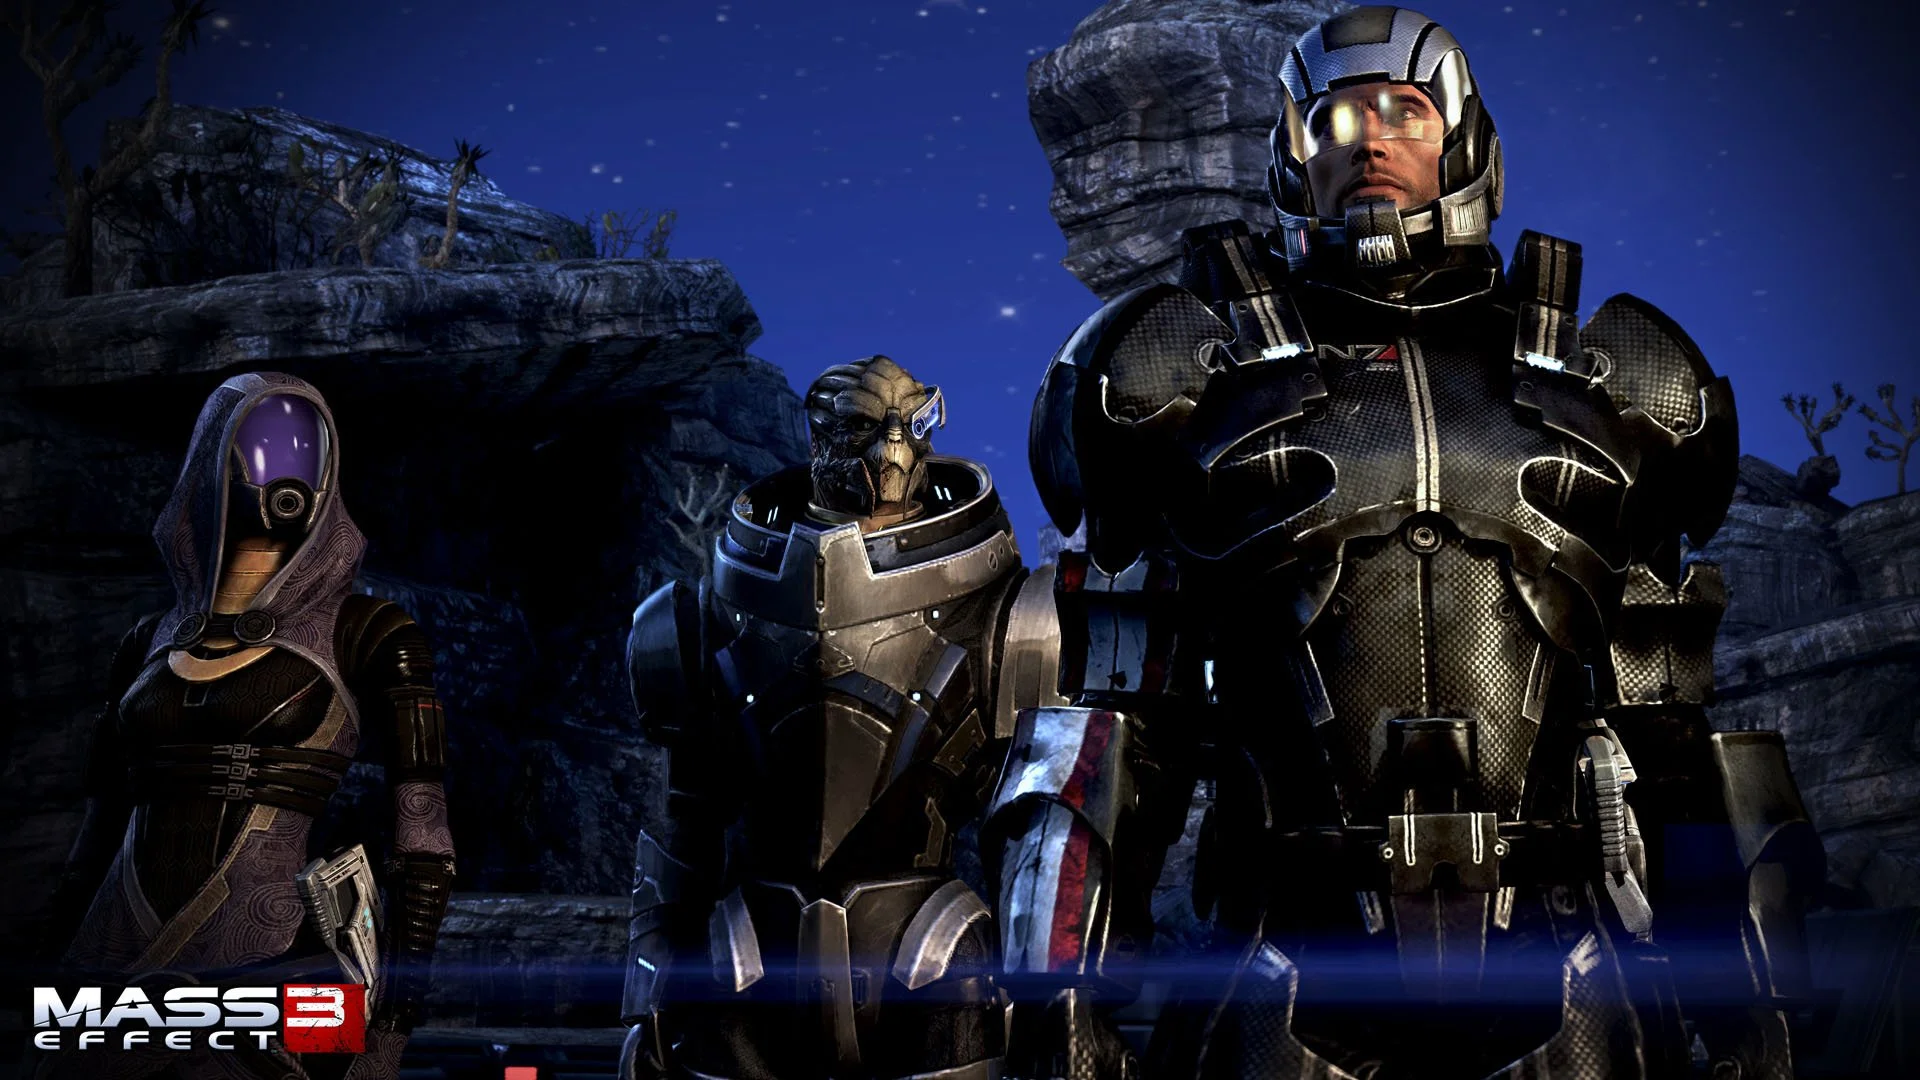 Mass Effect - вселенная, которая выезжала не только за счет геймлея, но и за счет интересных историй персонажей и мелких деталей мира.